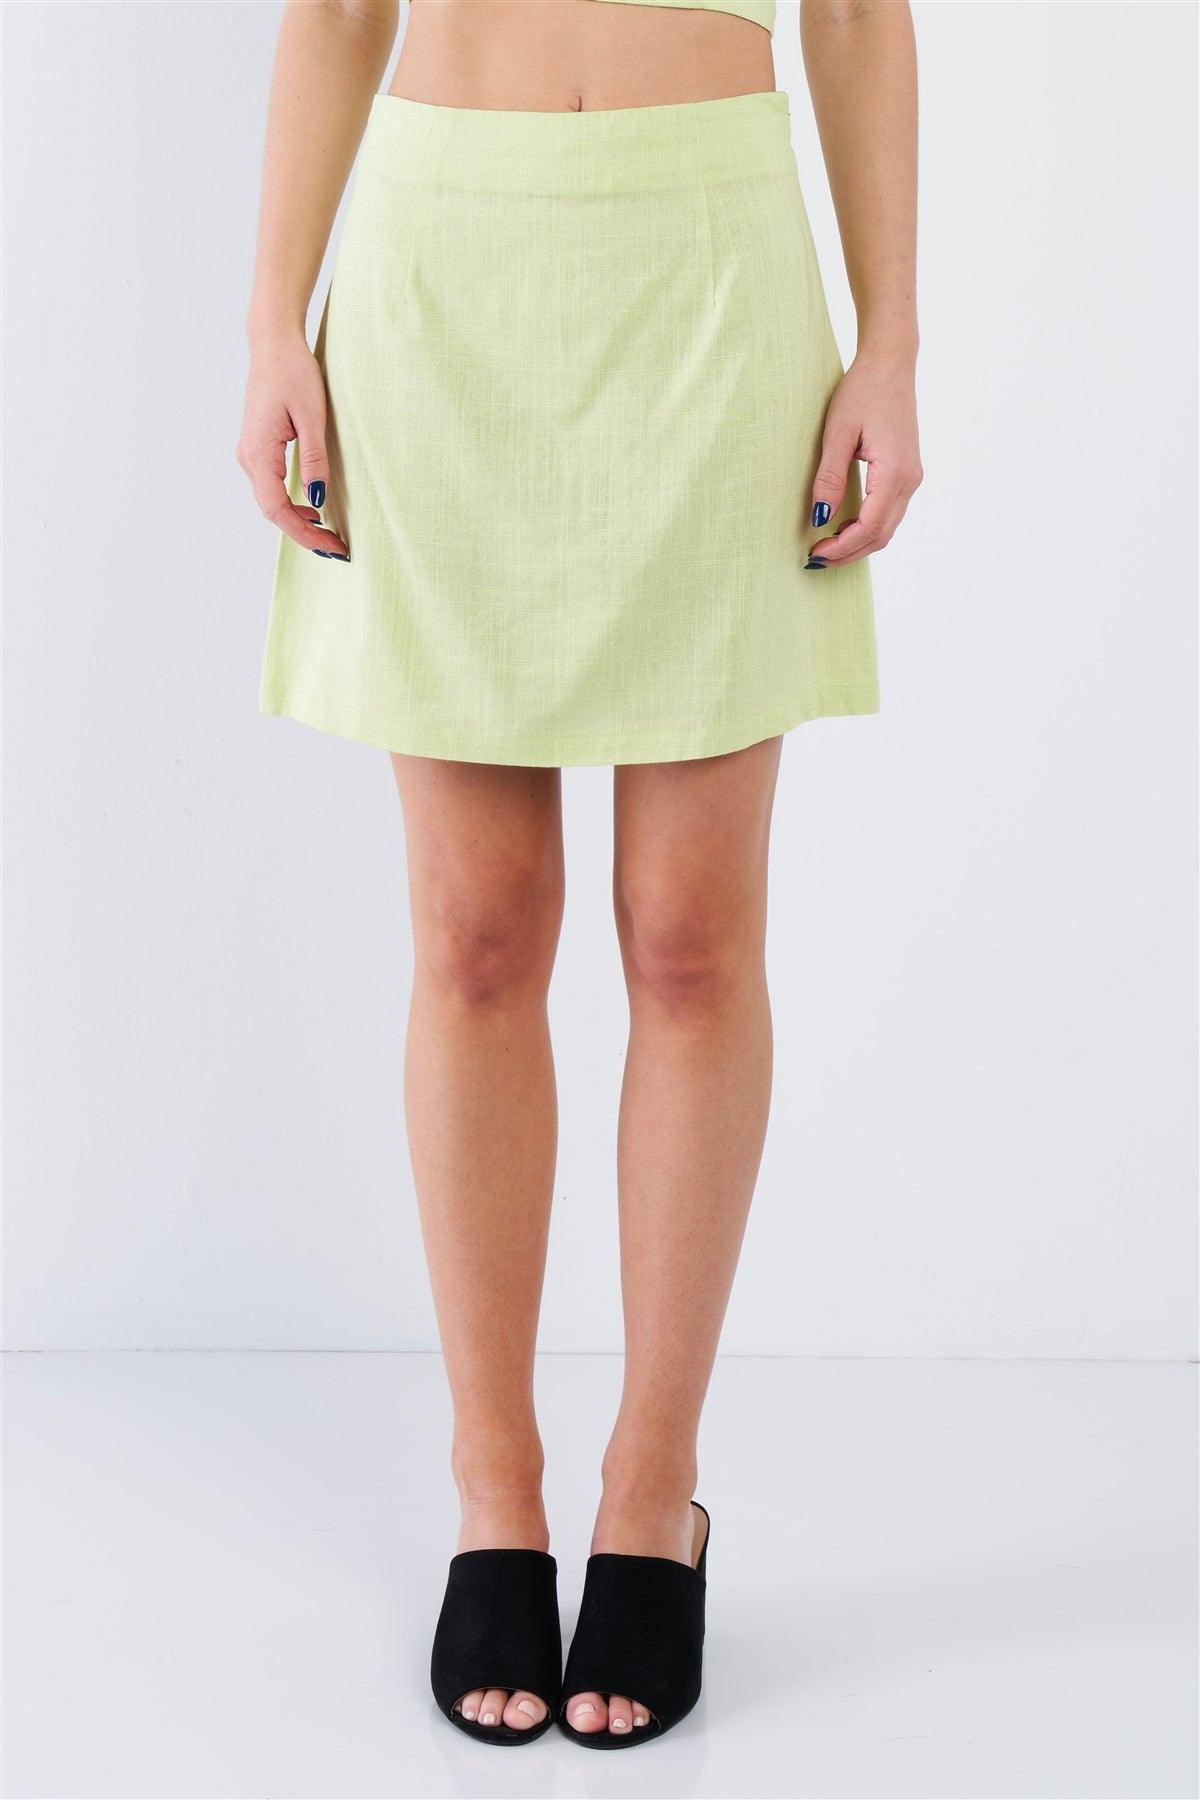 Lemonade Lime Green Smocked Crop Halter & Chic Mini Skirt Set /3-2-1